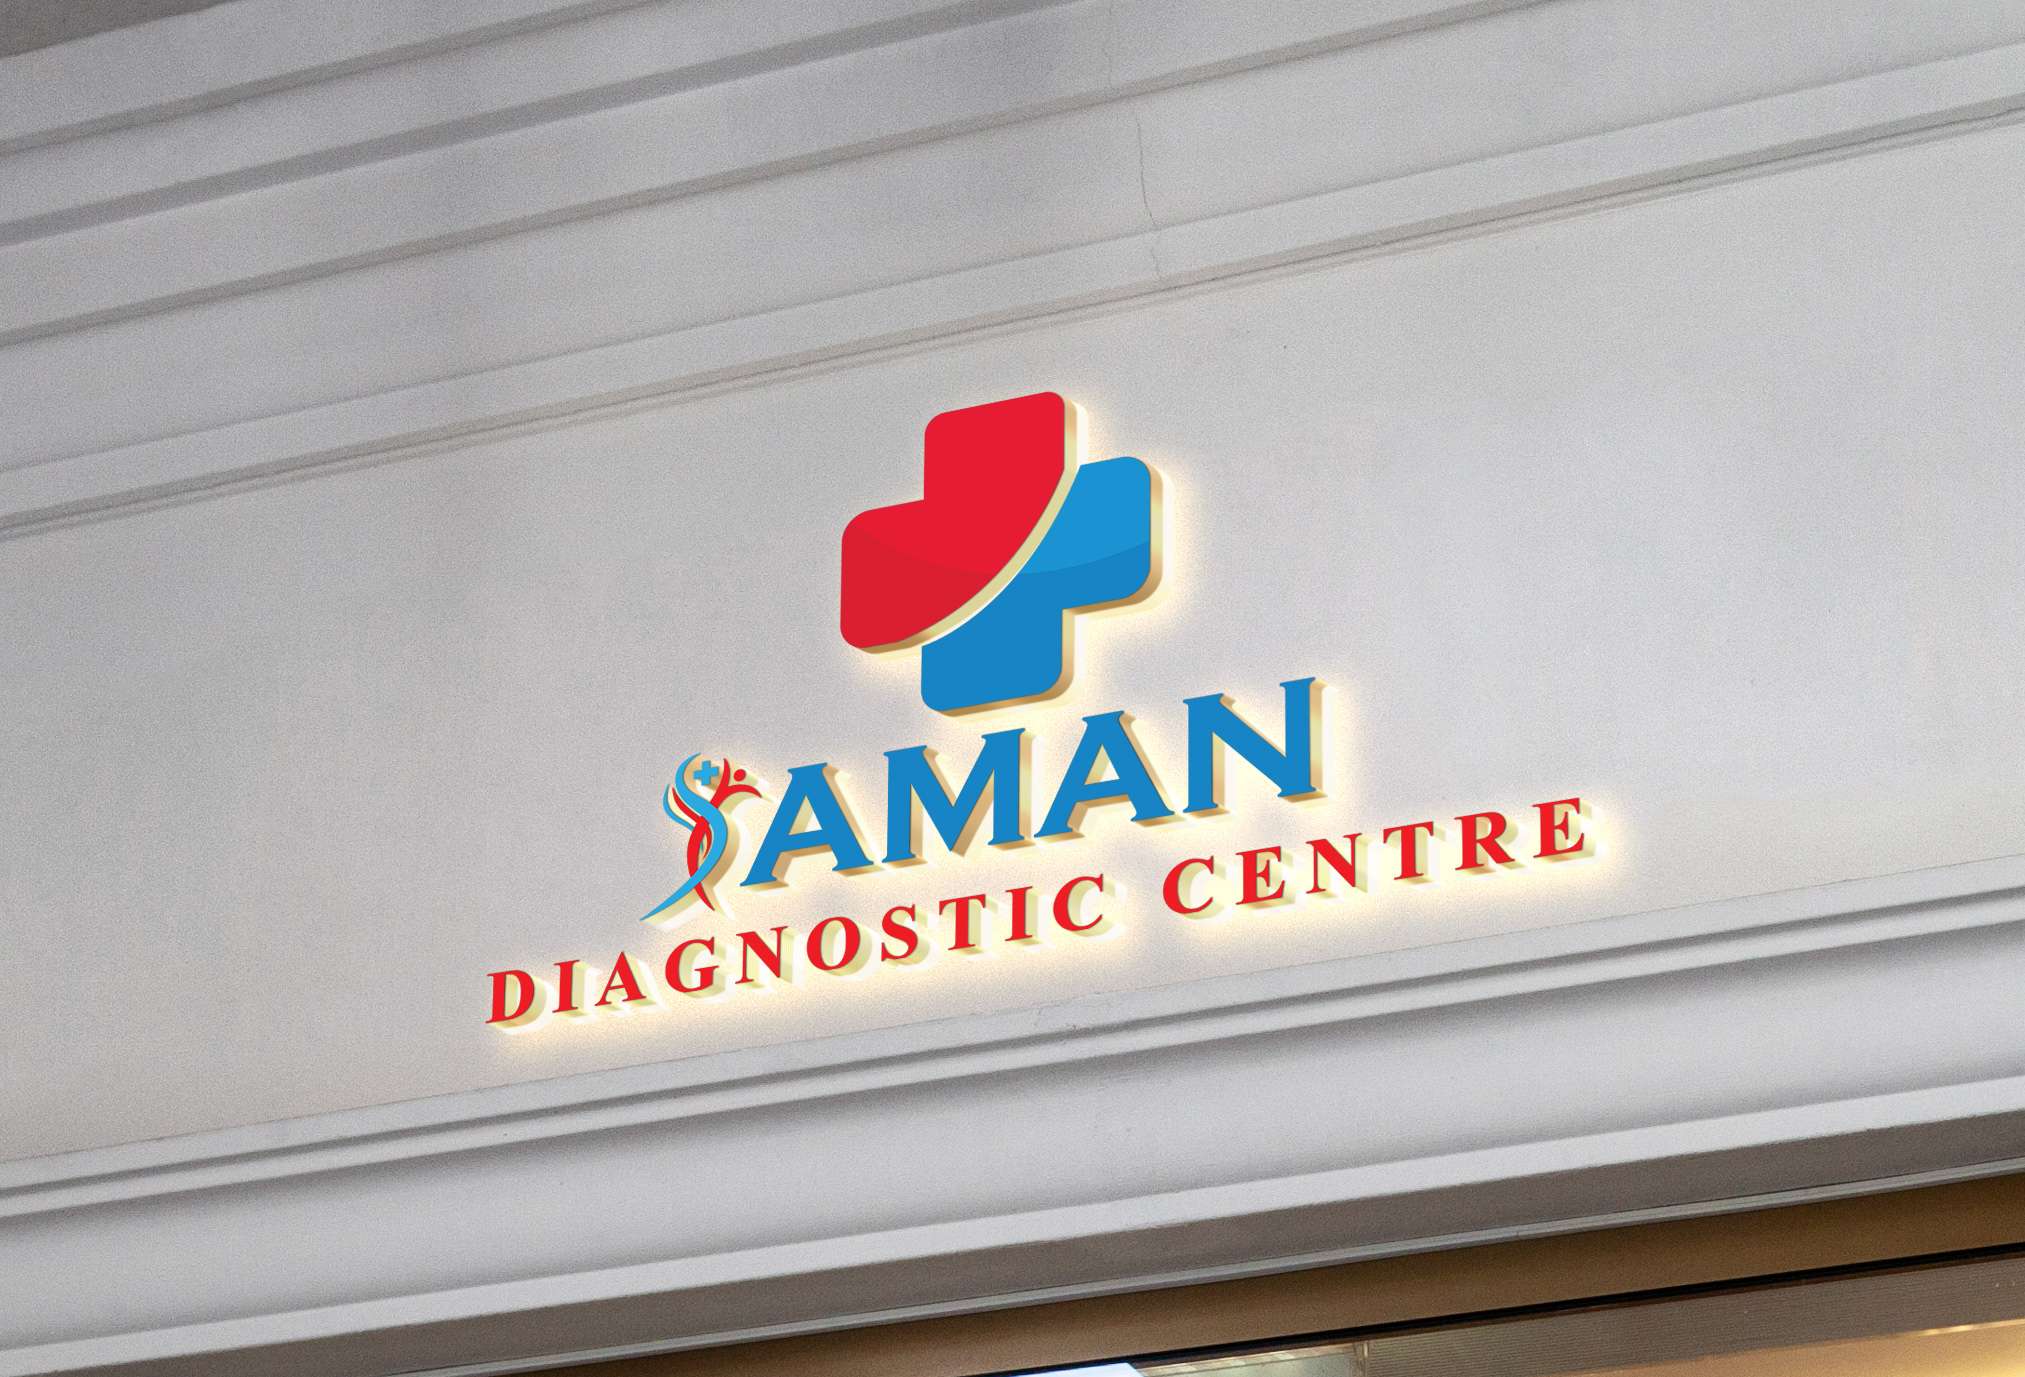 Aman Diagnostic Centre 